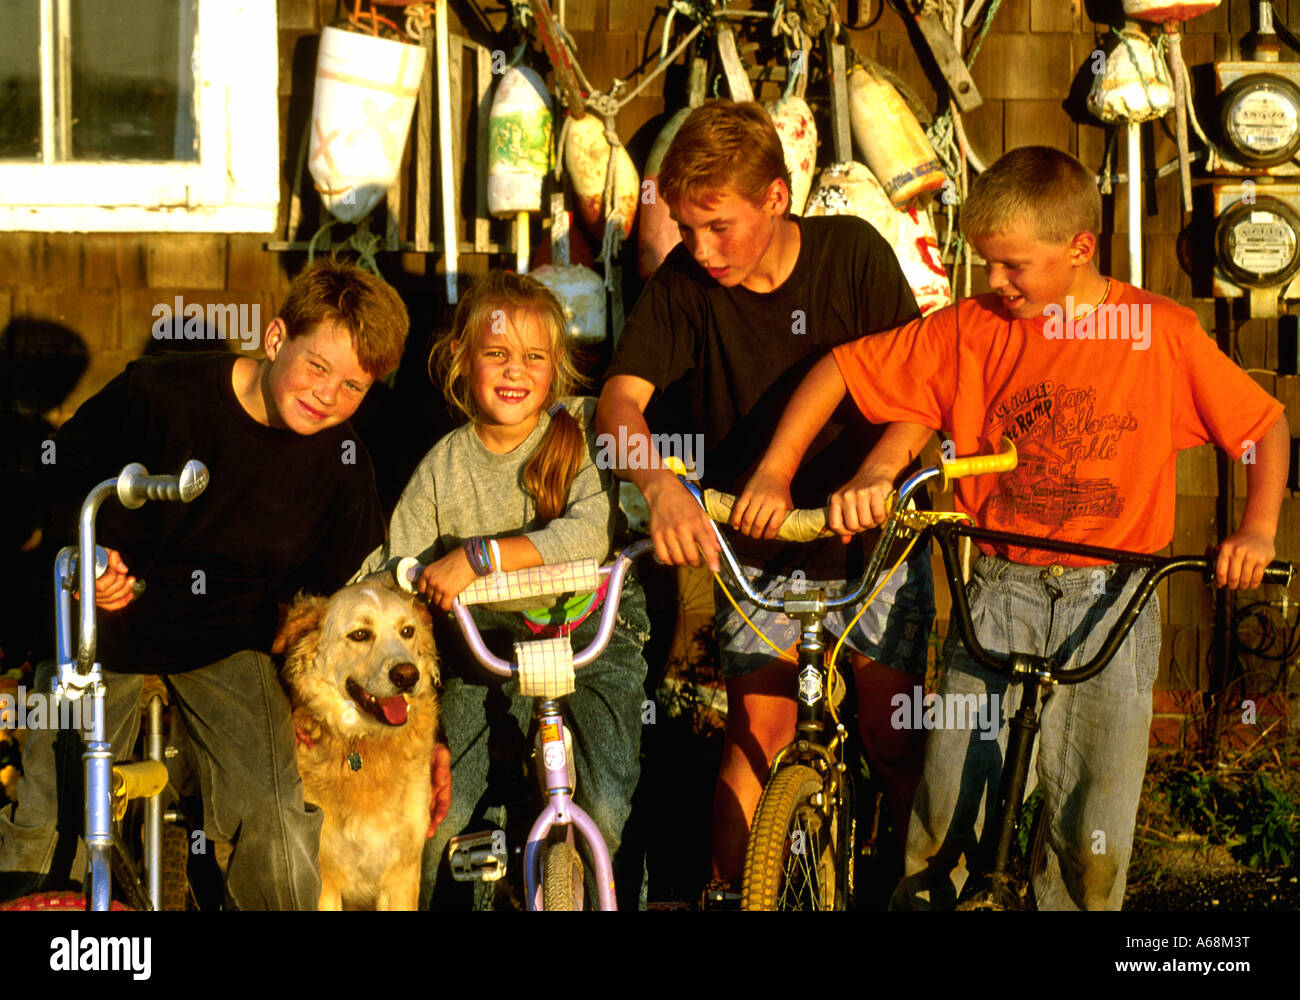 Groupe d'enfants sur des vélos avec chien Banque D'Images